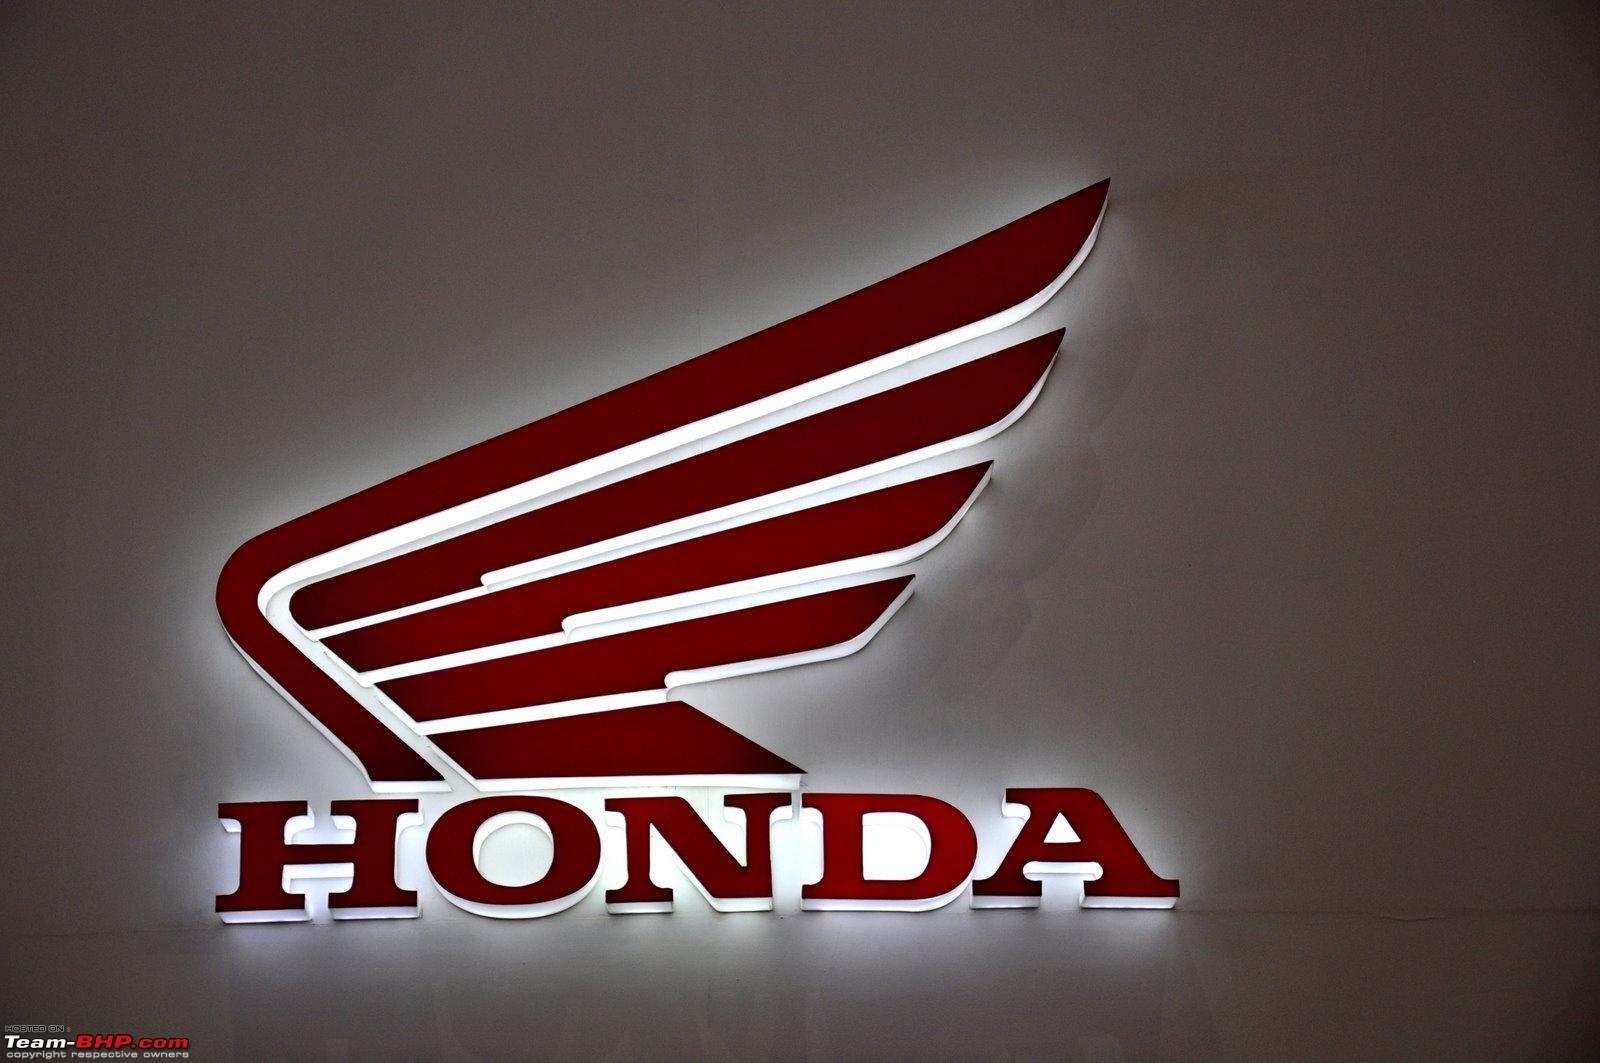 Honda Motorcycle Logo - Littlemorrui2: Honda Motorcycle Logo Vector Images